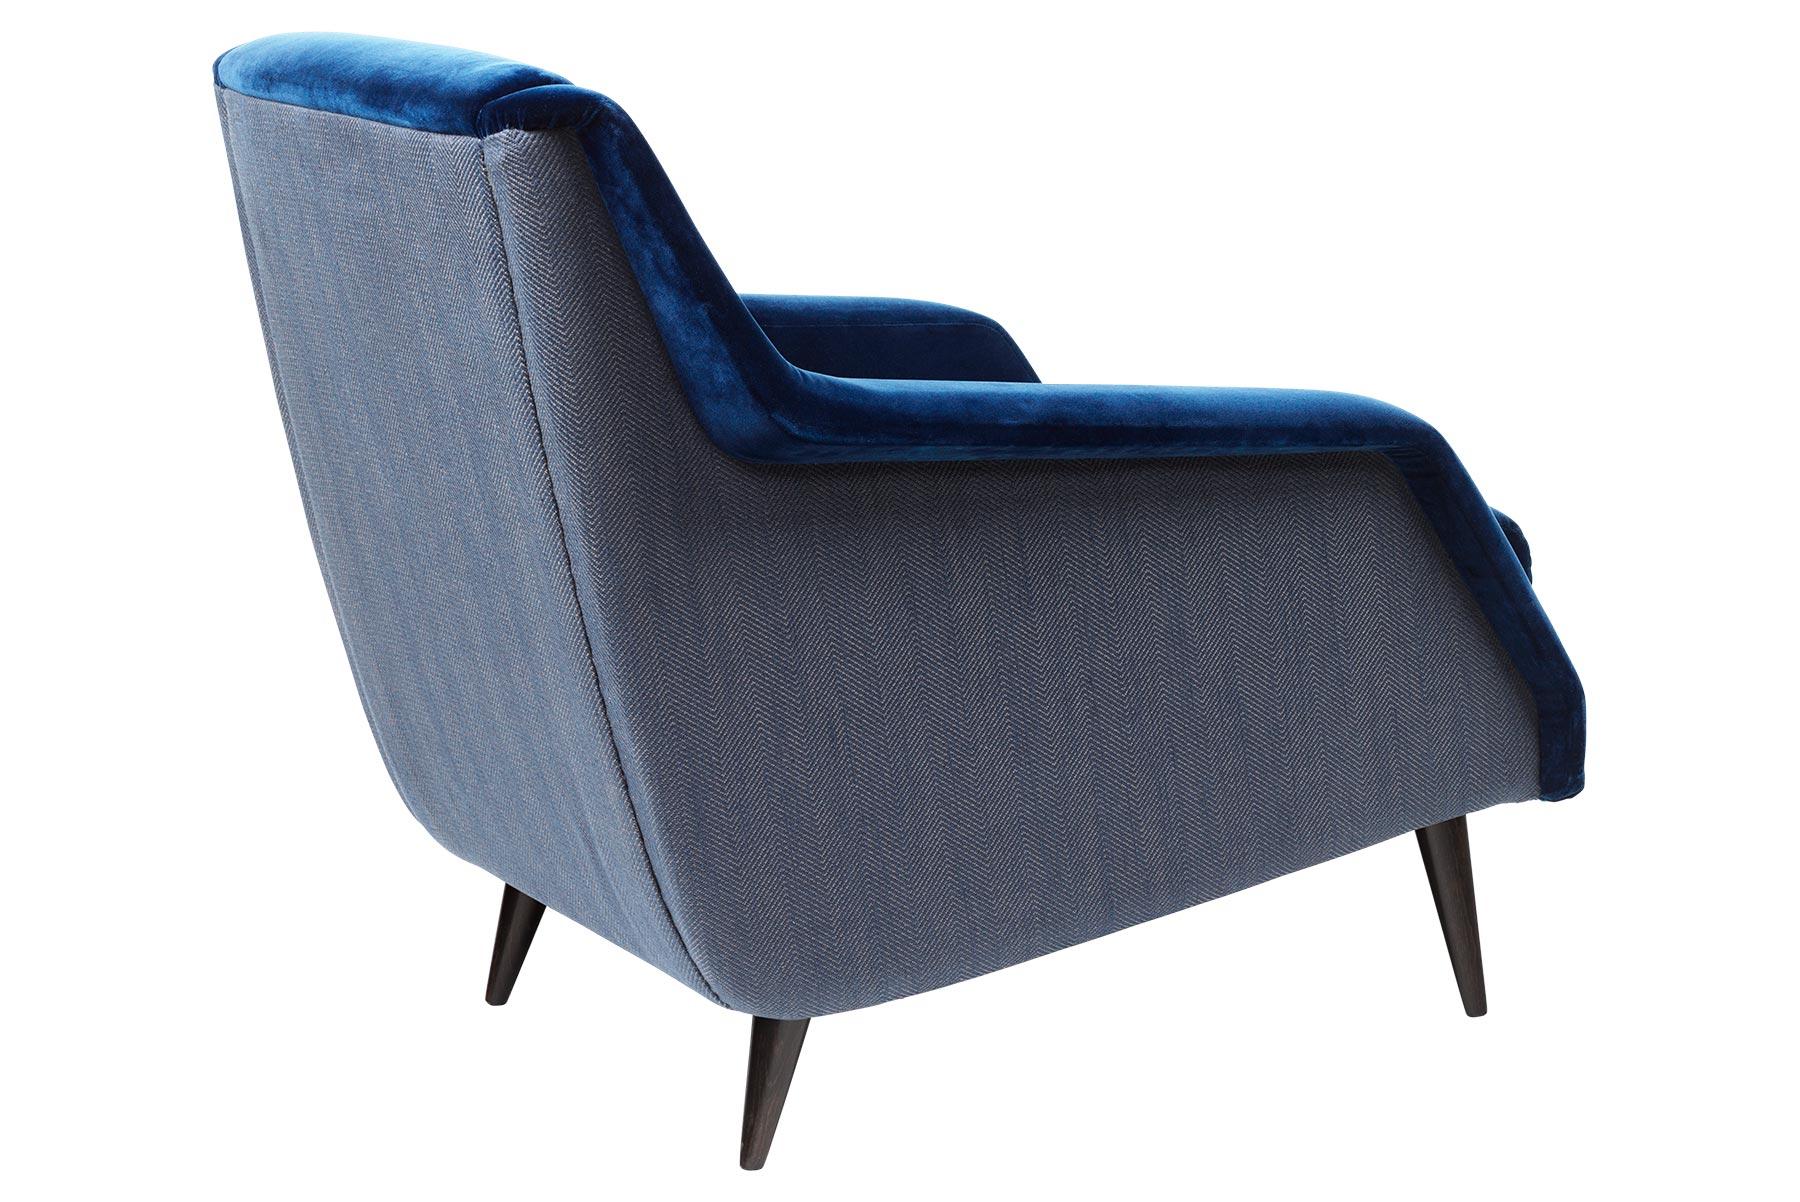 Der Sessel CDC.1 wurde 1954 von Carlo De Carli entworfen und zeichnet sich durch den für die damalige Zeit typischen eleganten, minimalistischen Designstil aus. Der CDC.1 Loungesessel ist anmutig und schlank, seine Arme schwingen wie Flügel und